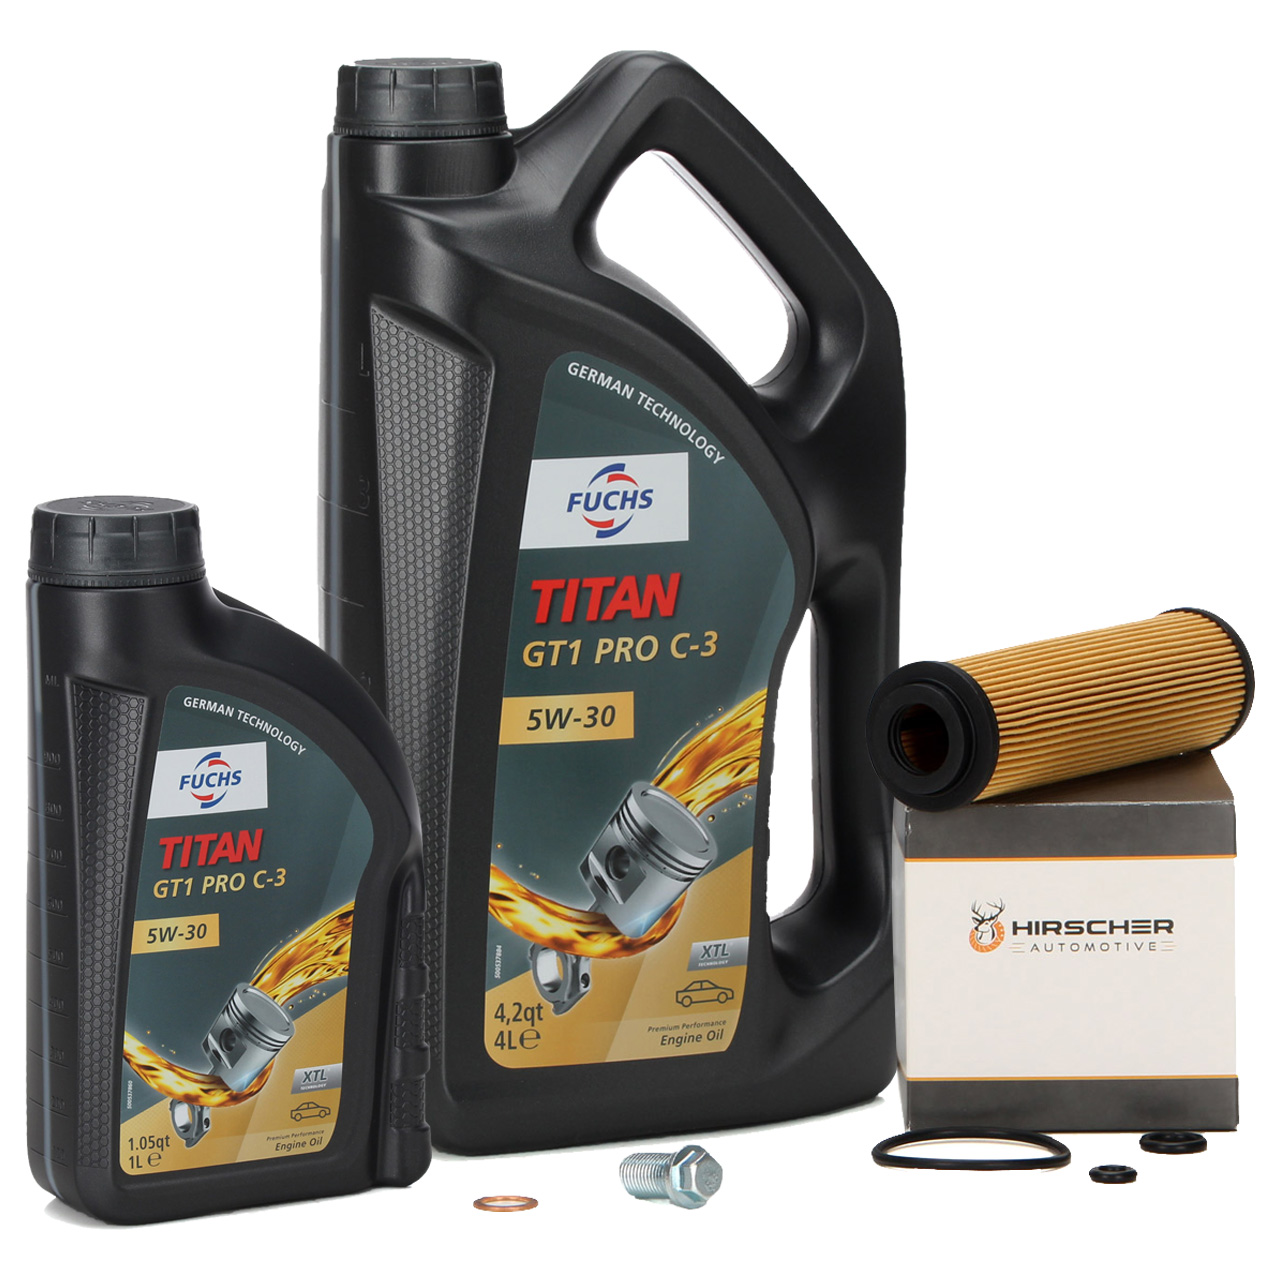 6L FUCHS TITAN GT1 Pro C-3 Motoröl 5W30 MB 229.51 + HIRSCHER Ölfilter 2711800109